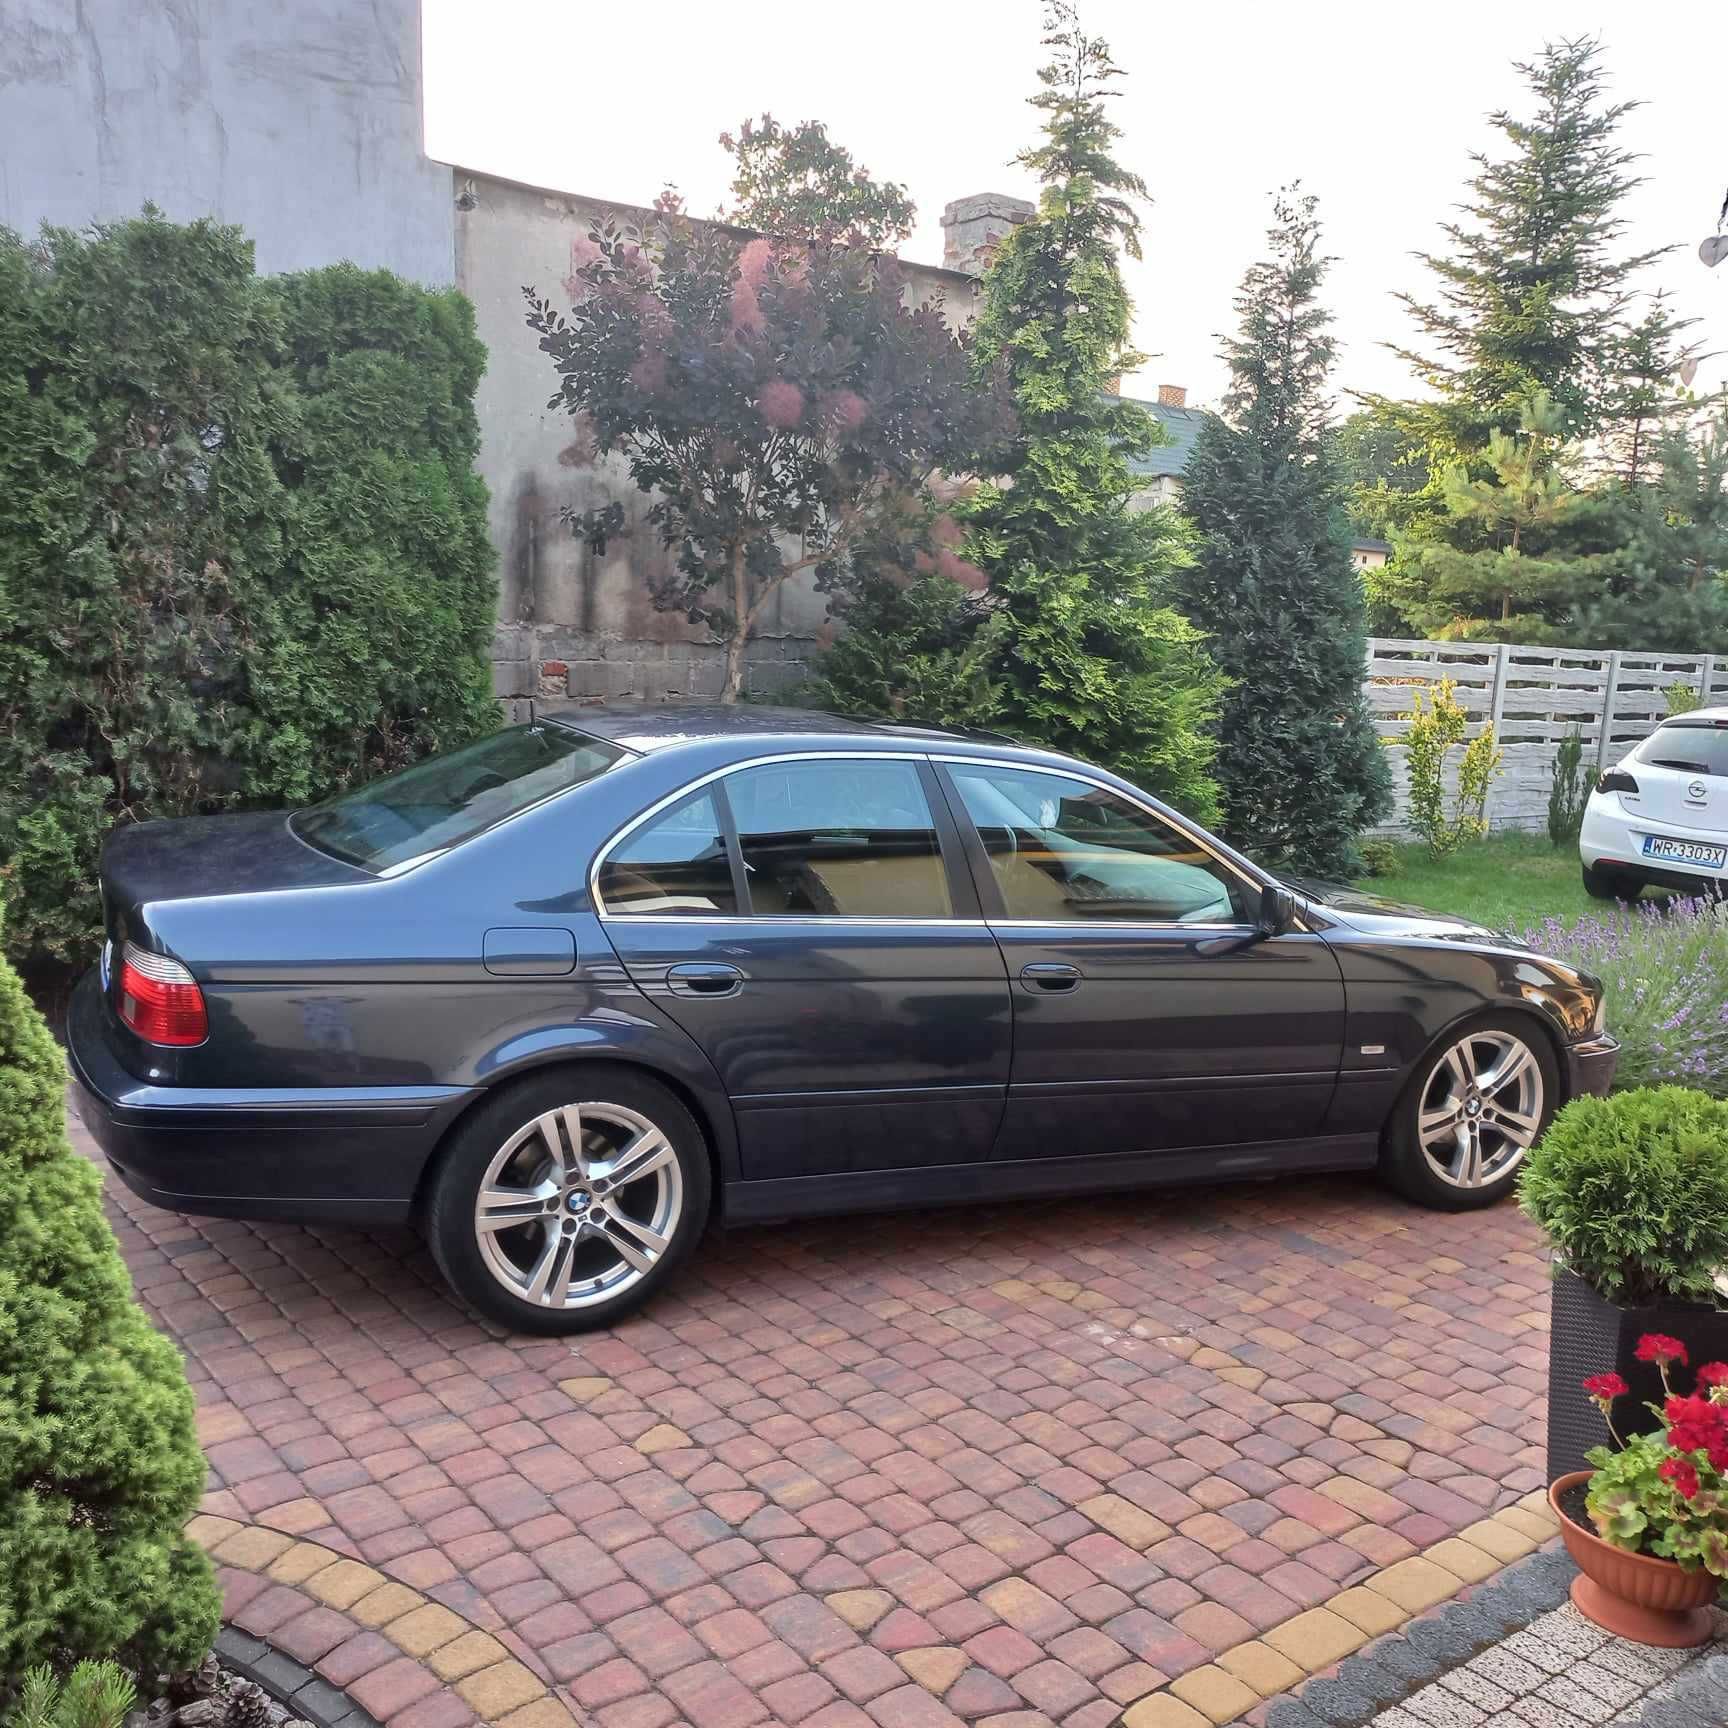 BMW 525i 2001r. B+G Pierwszy właściciel w Pl